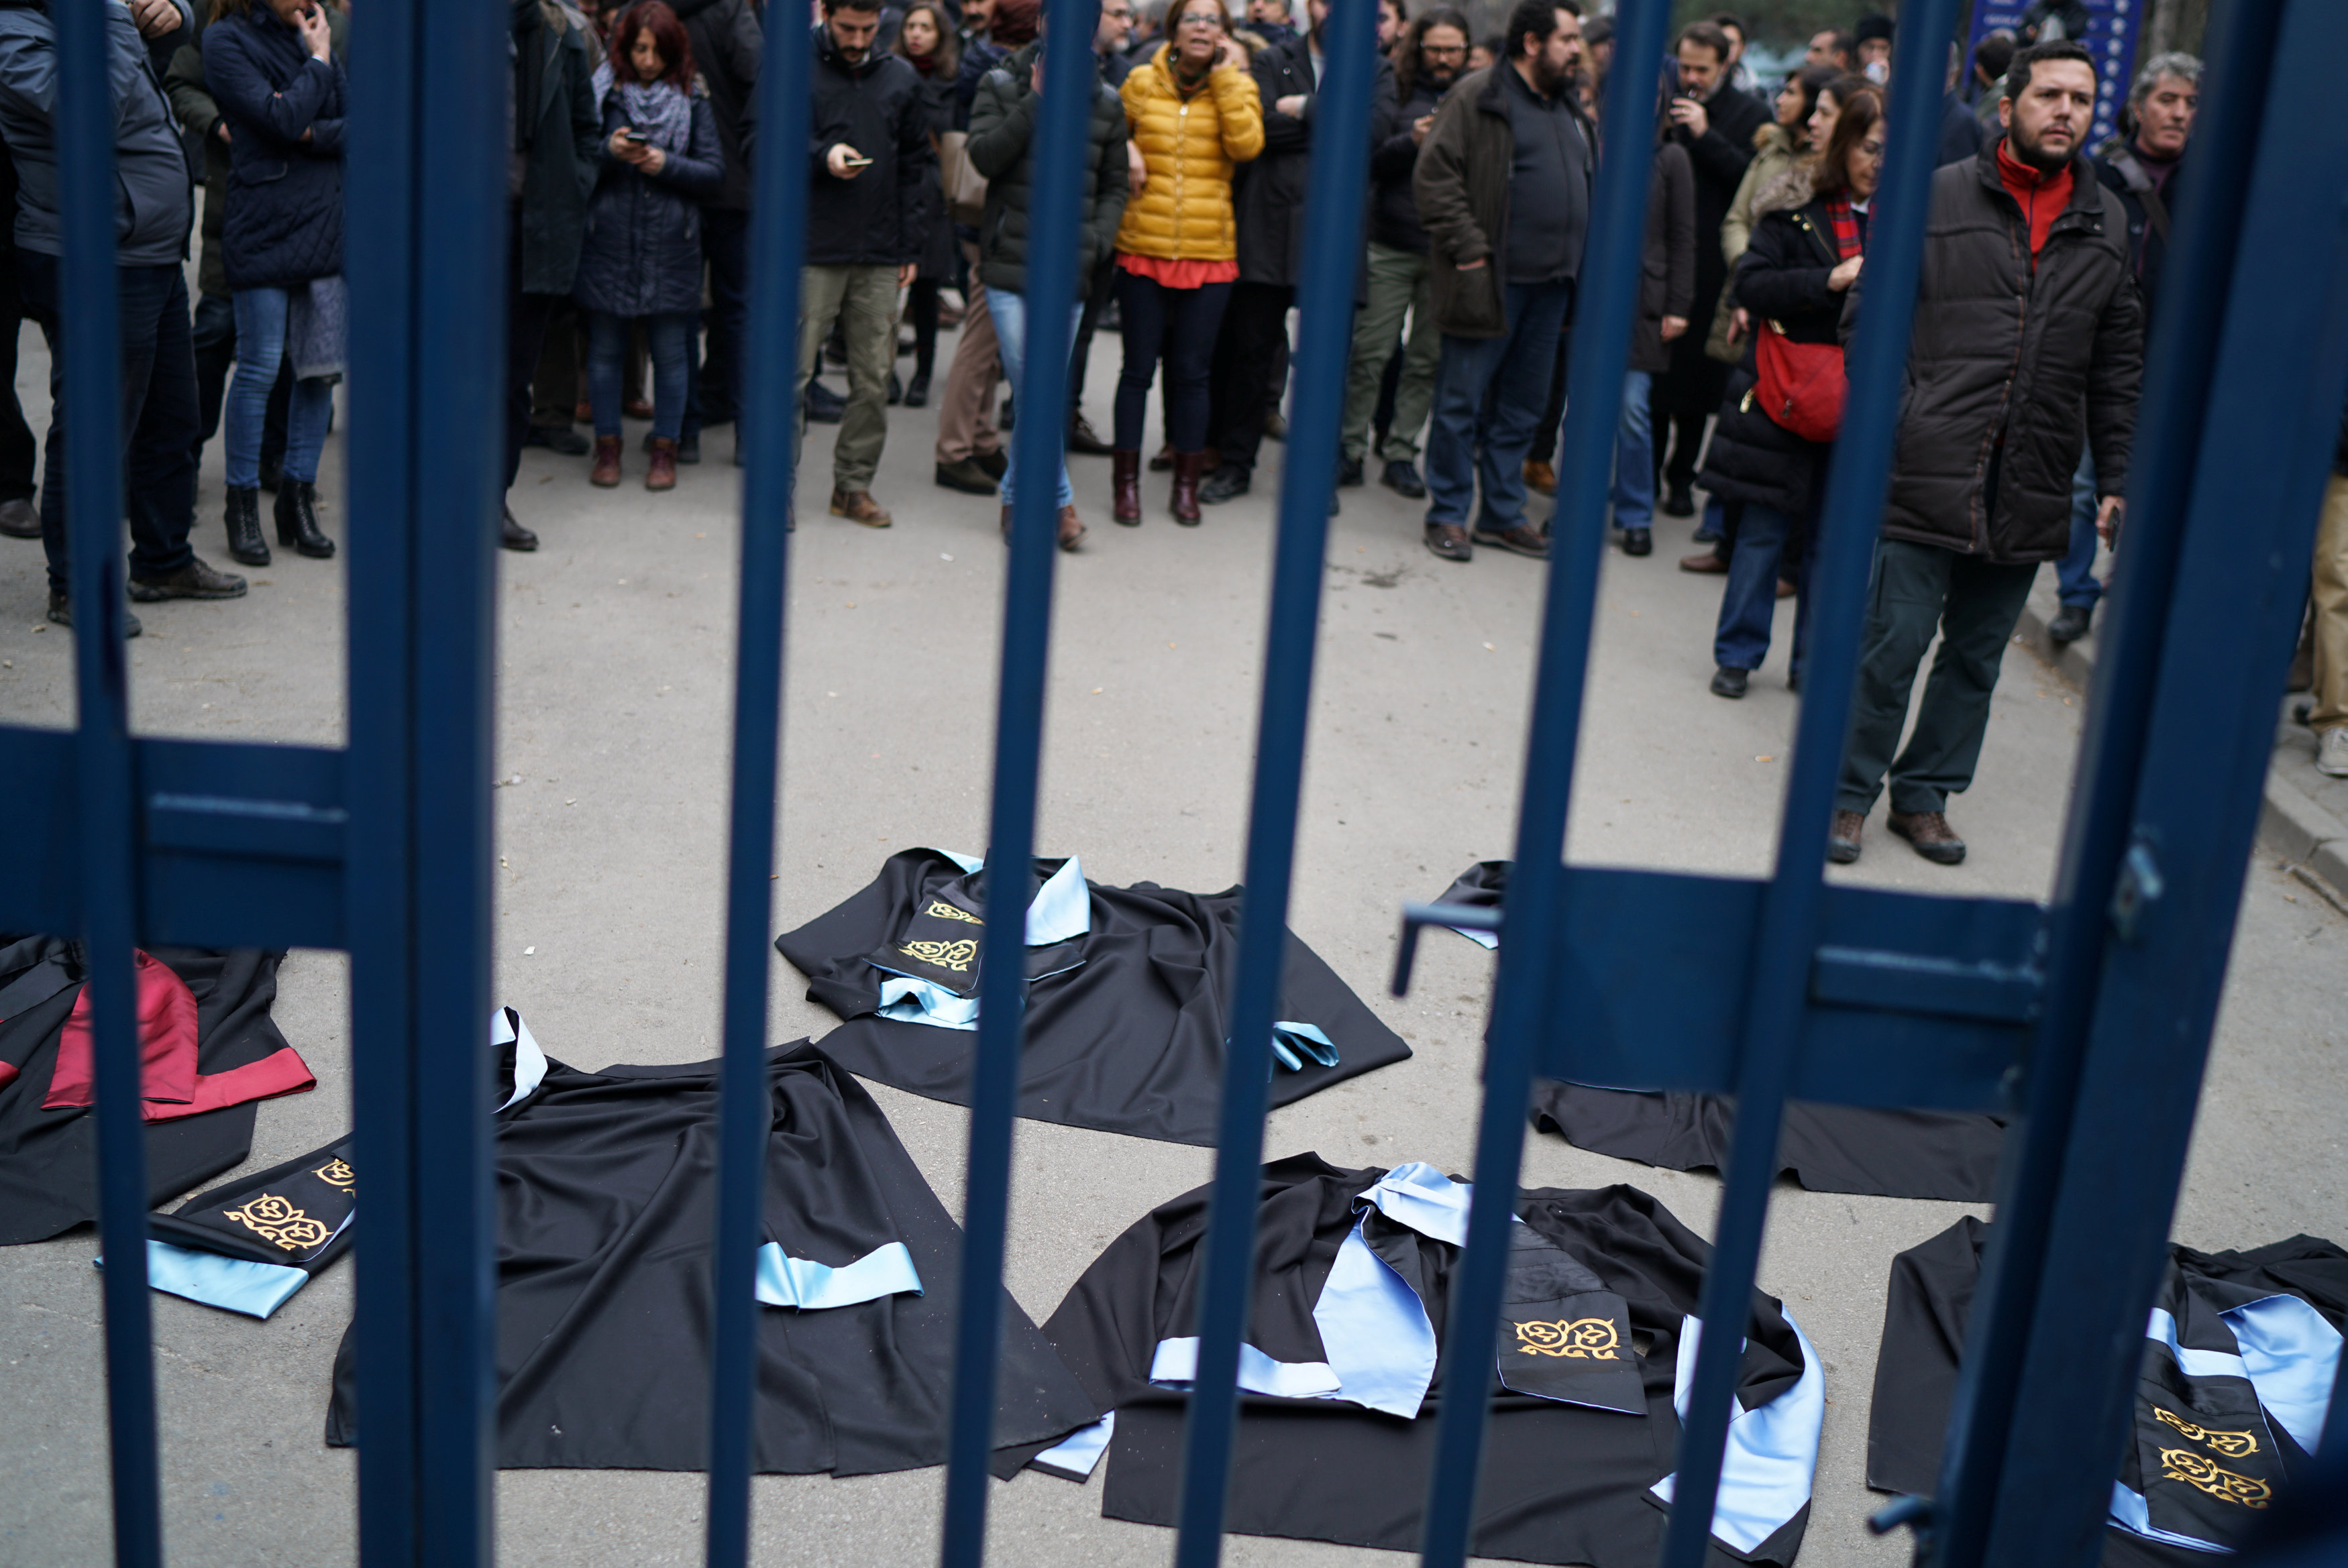 المتظاهرون يلقون بالزى الأكاديمى على الأرض احتجاجًا على إقالة الأكاديميين من الجامعات فى تركيا